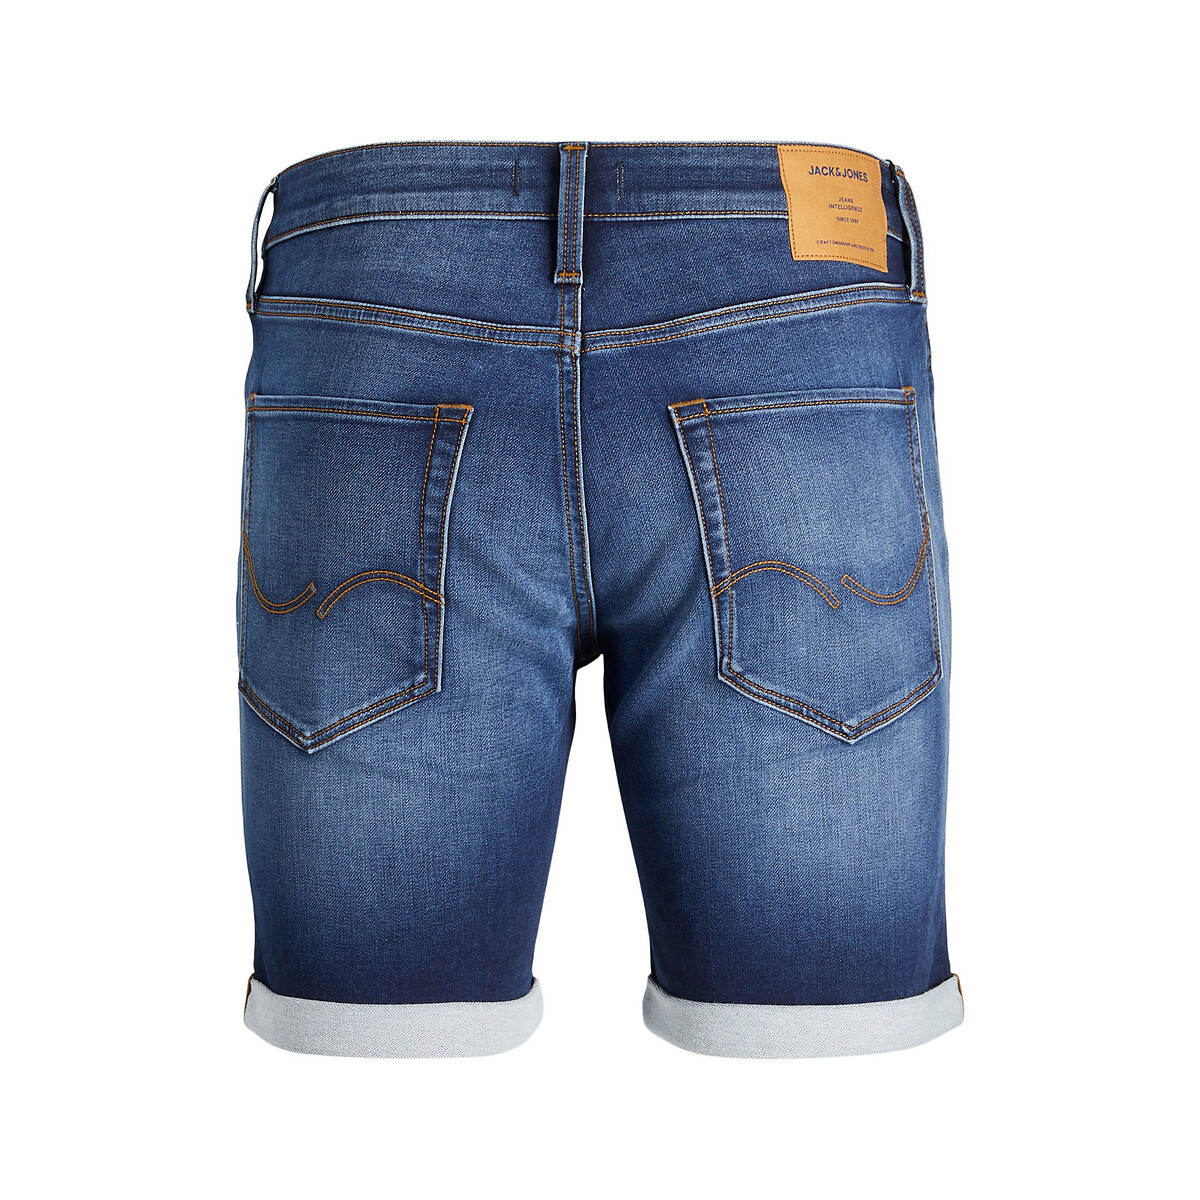 Шорты JACK & JONES Из джинсовой ткани суперстрейч Rick S синий, размер S - фото 5